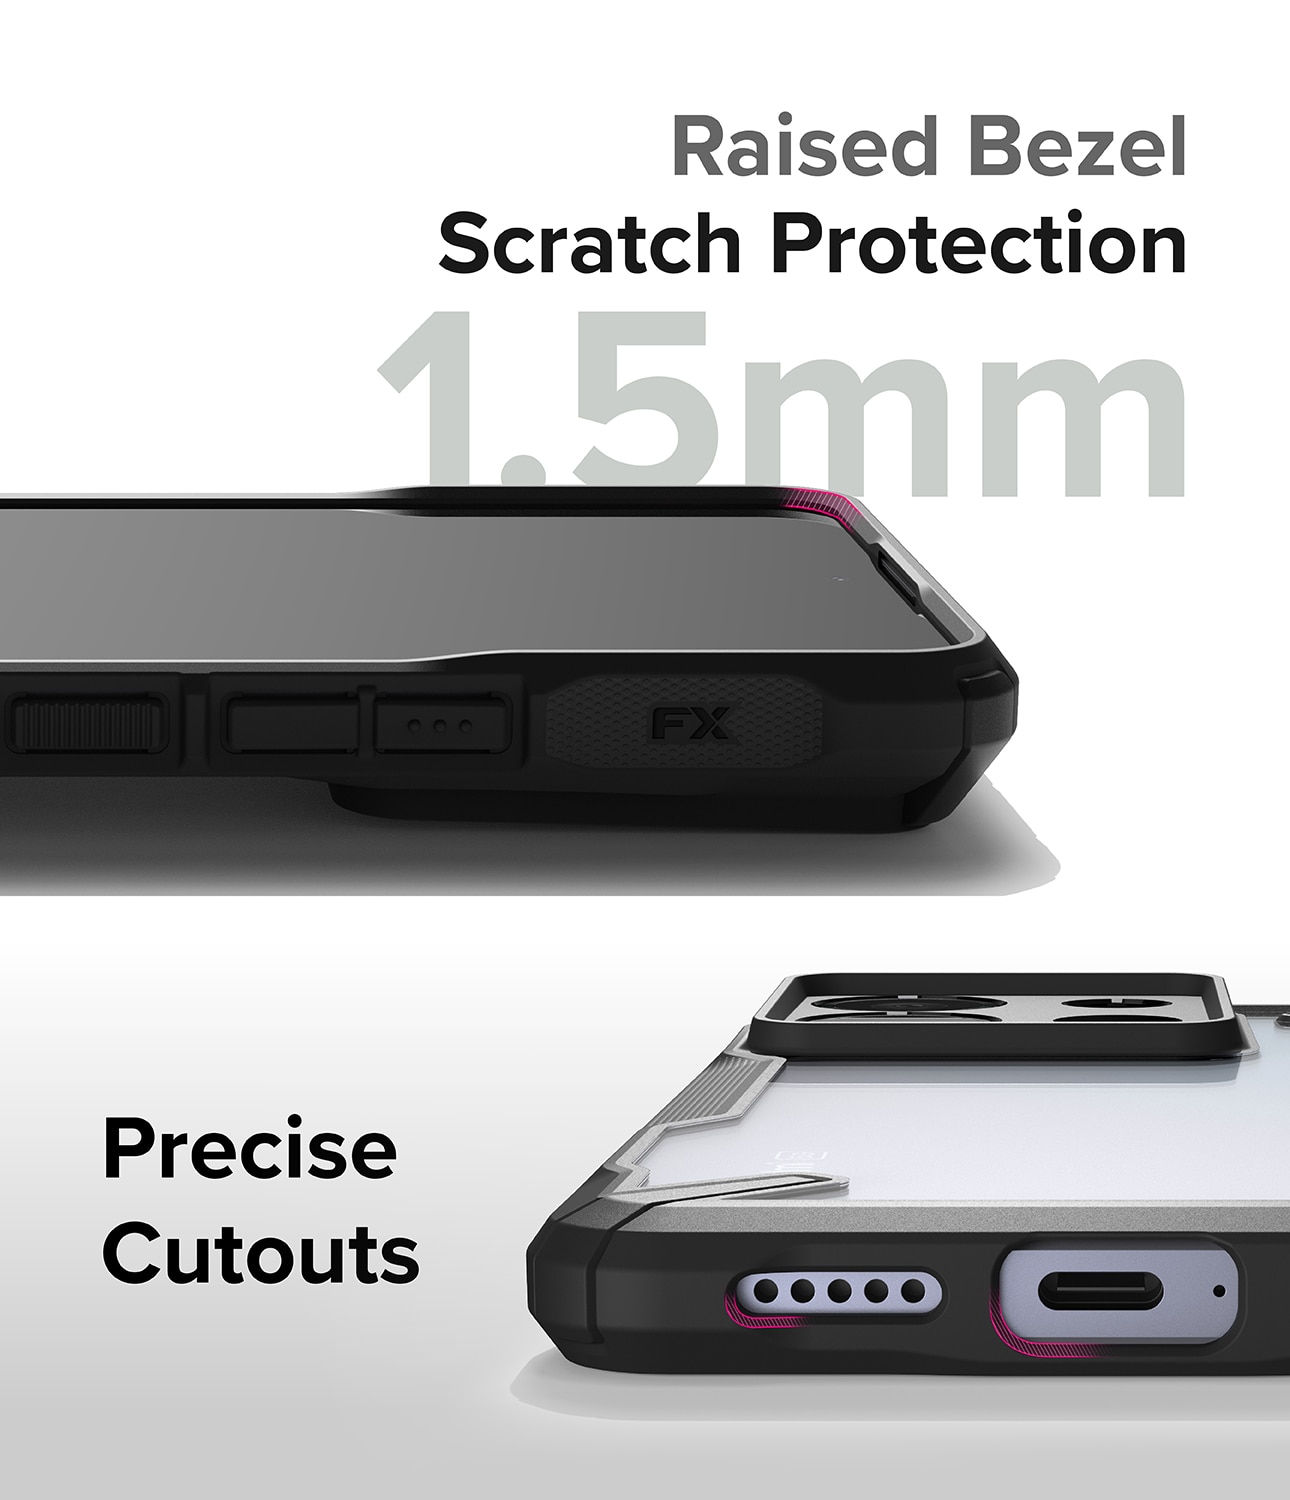 Xiaomi Redmi Note 13 Pro Fusion X Case Black